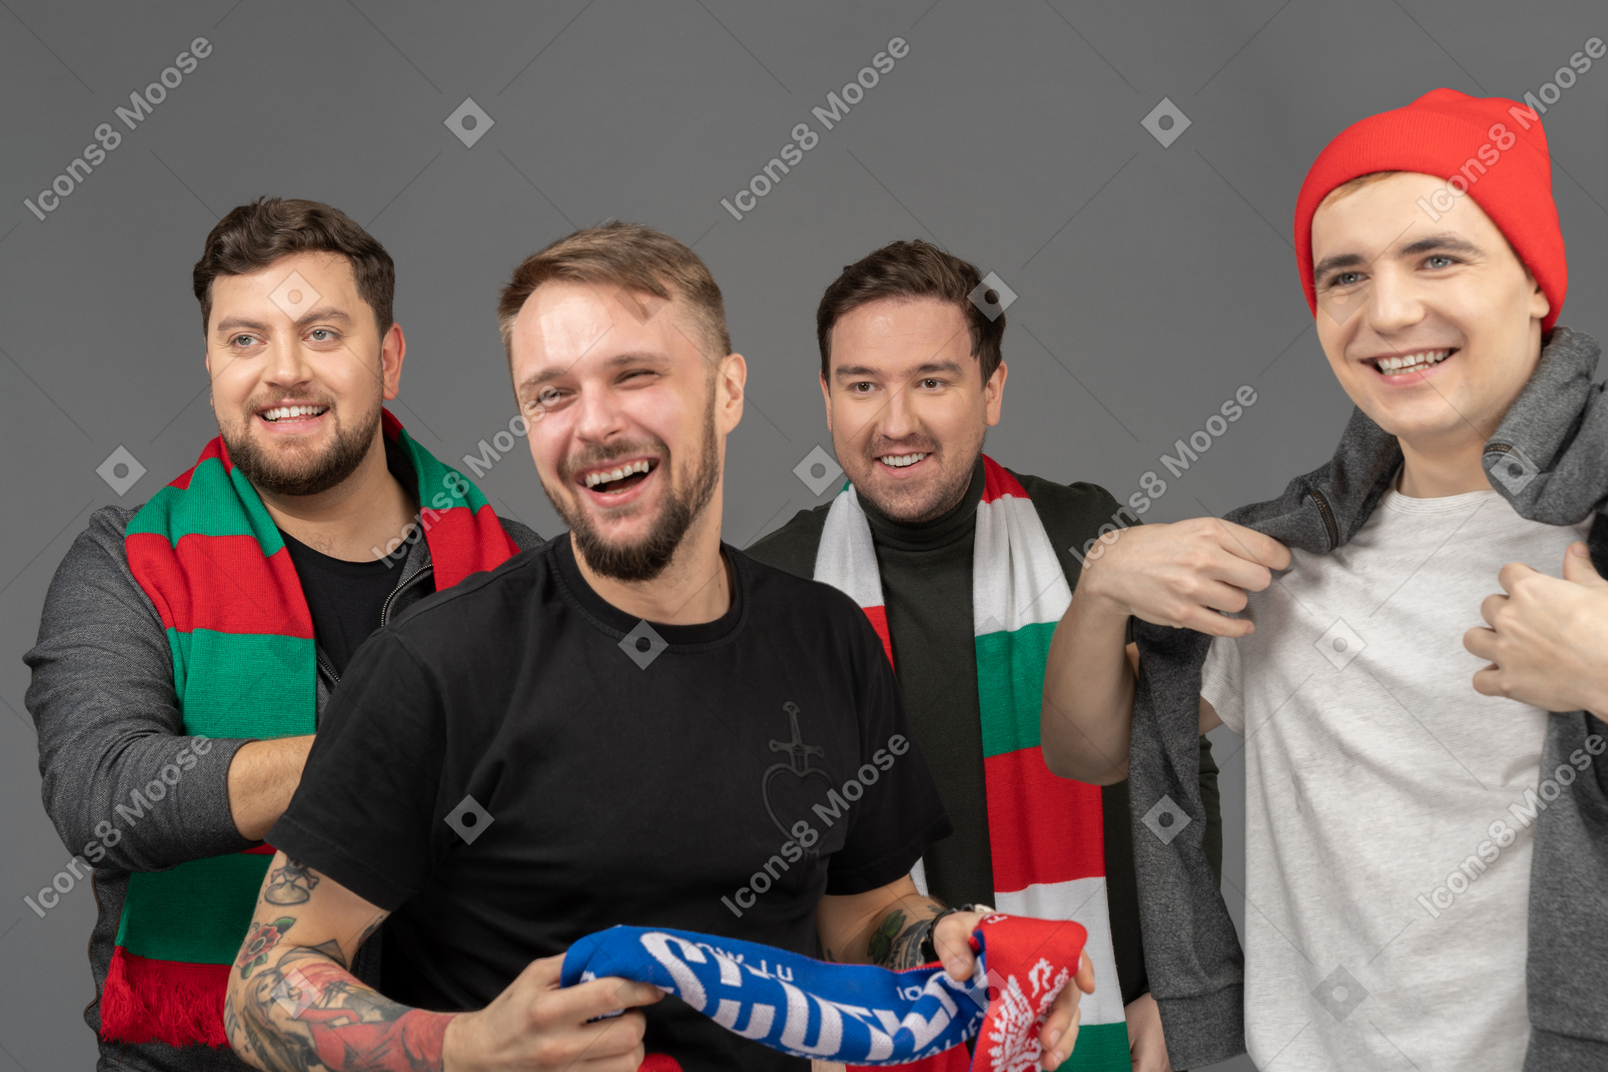 Крупный план четырех улыбающихся футбольных фанатов мужского пола, смотрящих в сторону